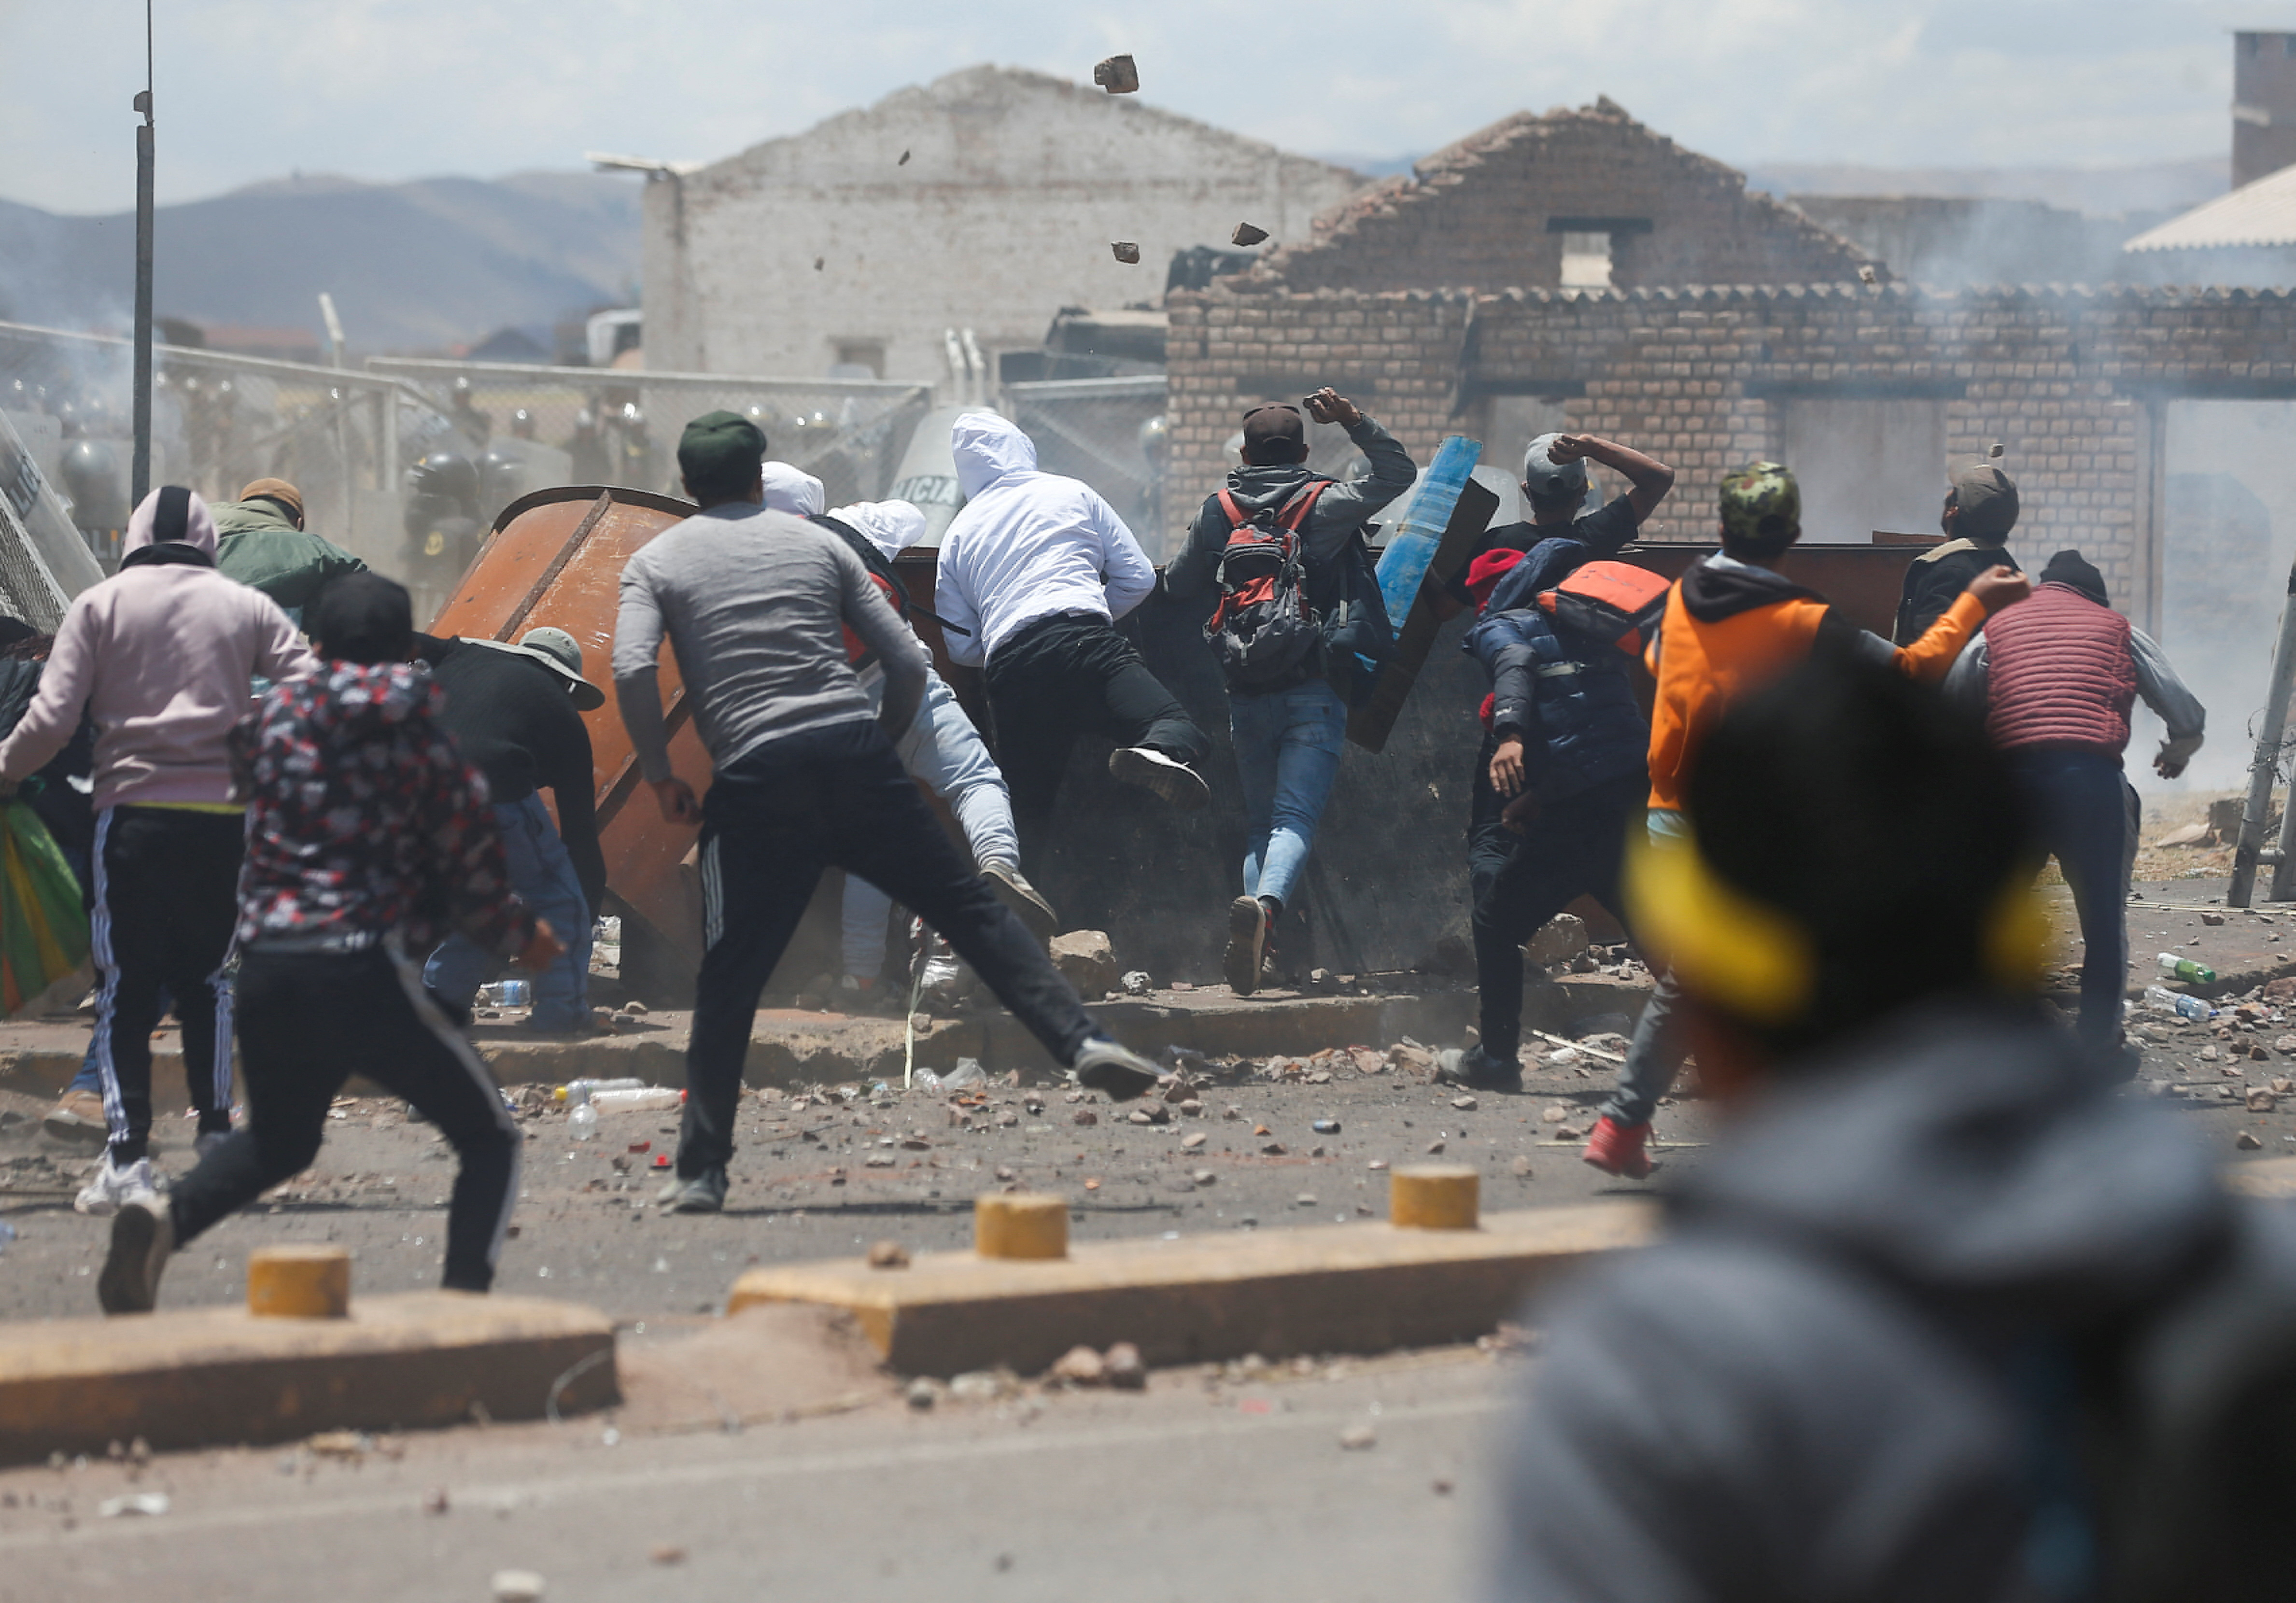 La población también ha protagonizado actos vandálicos en algunas regiones. (Reuters/Hugo Courotto)